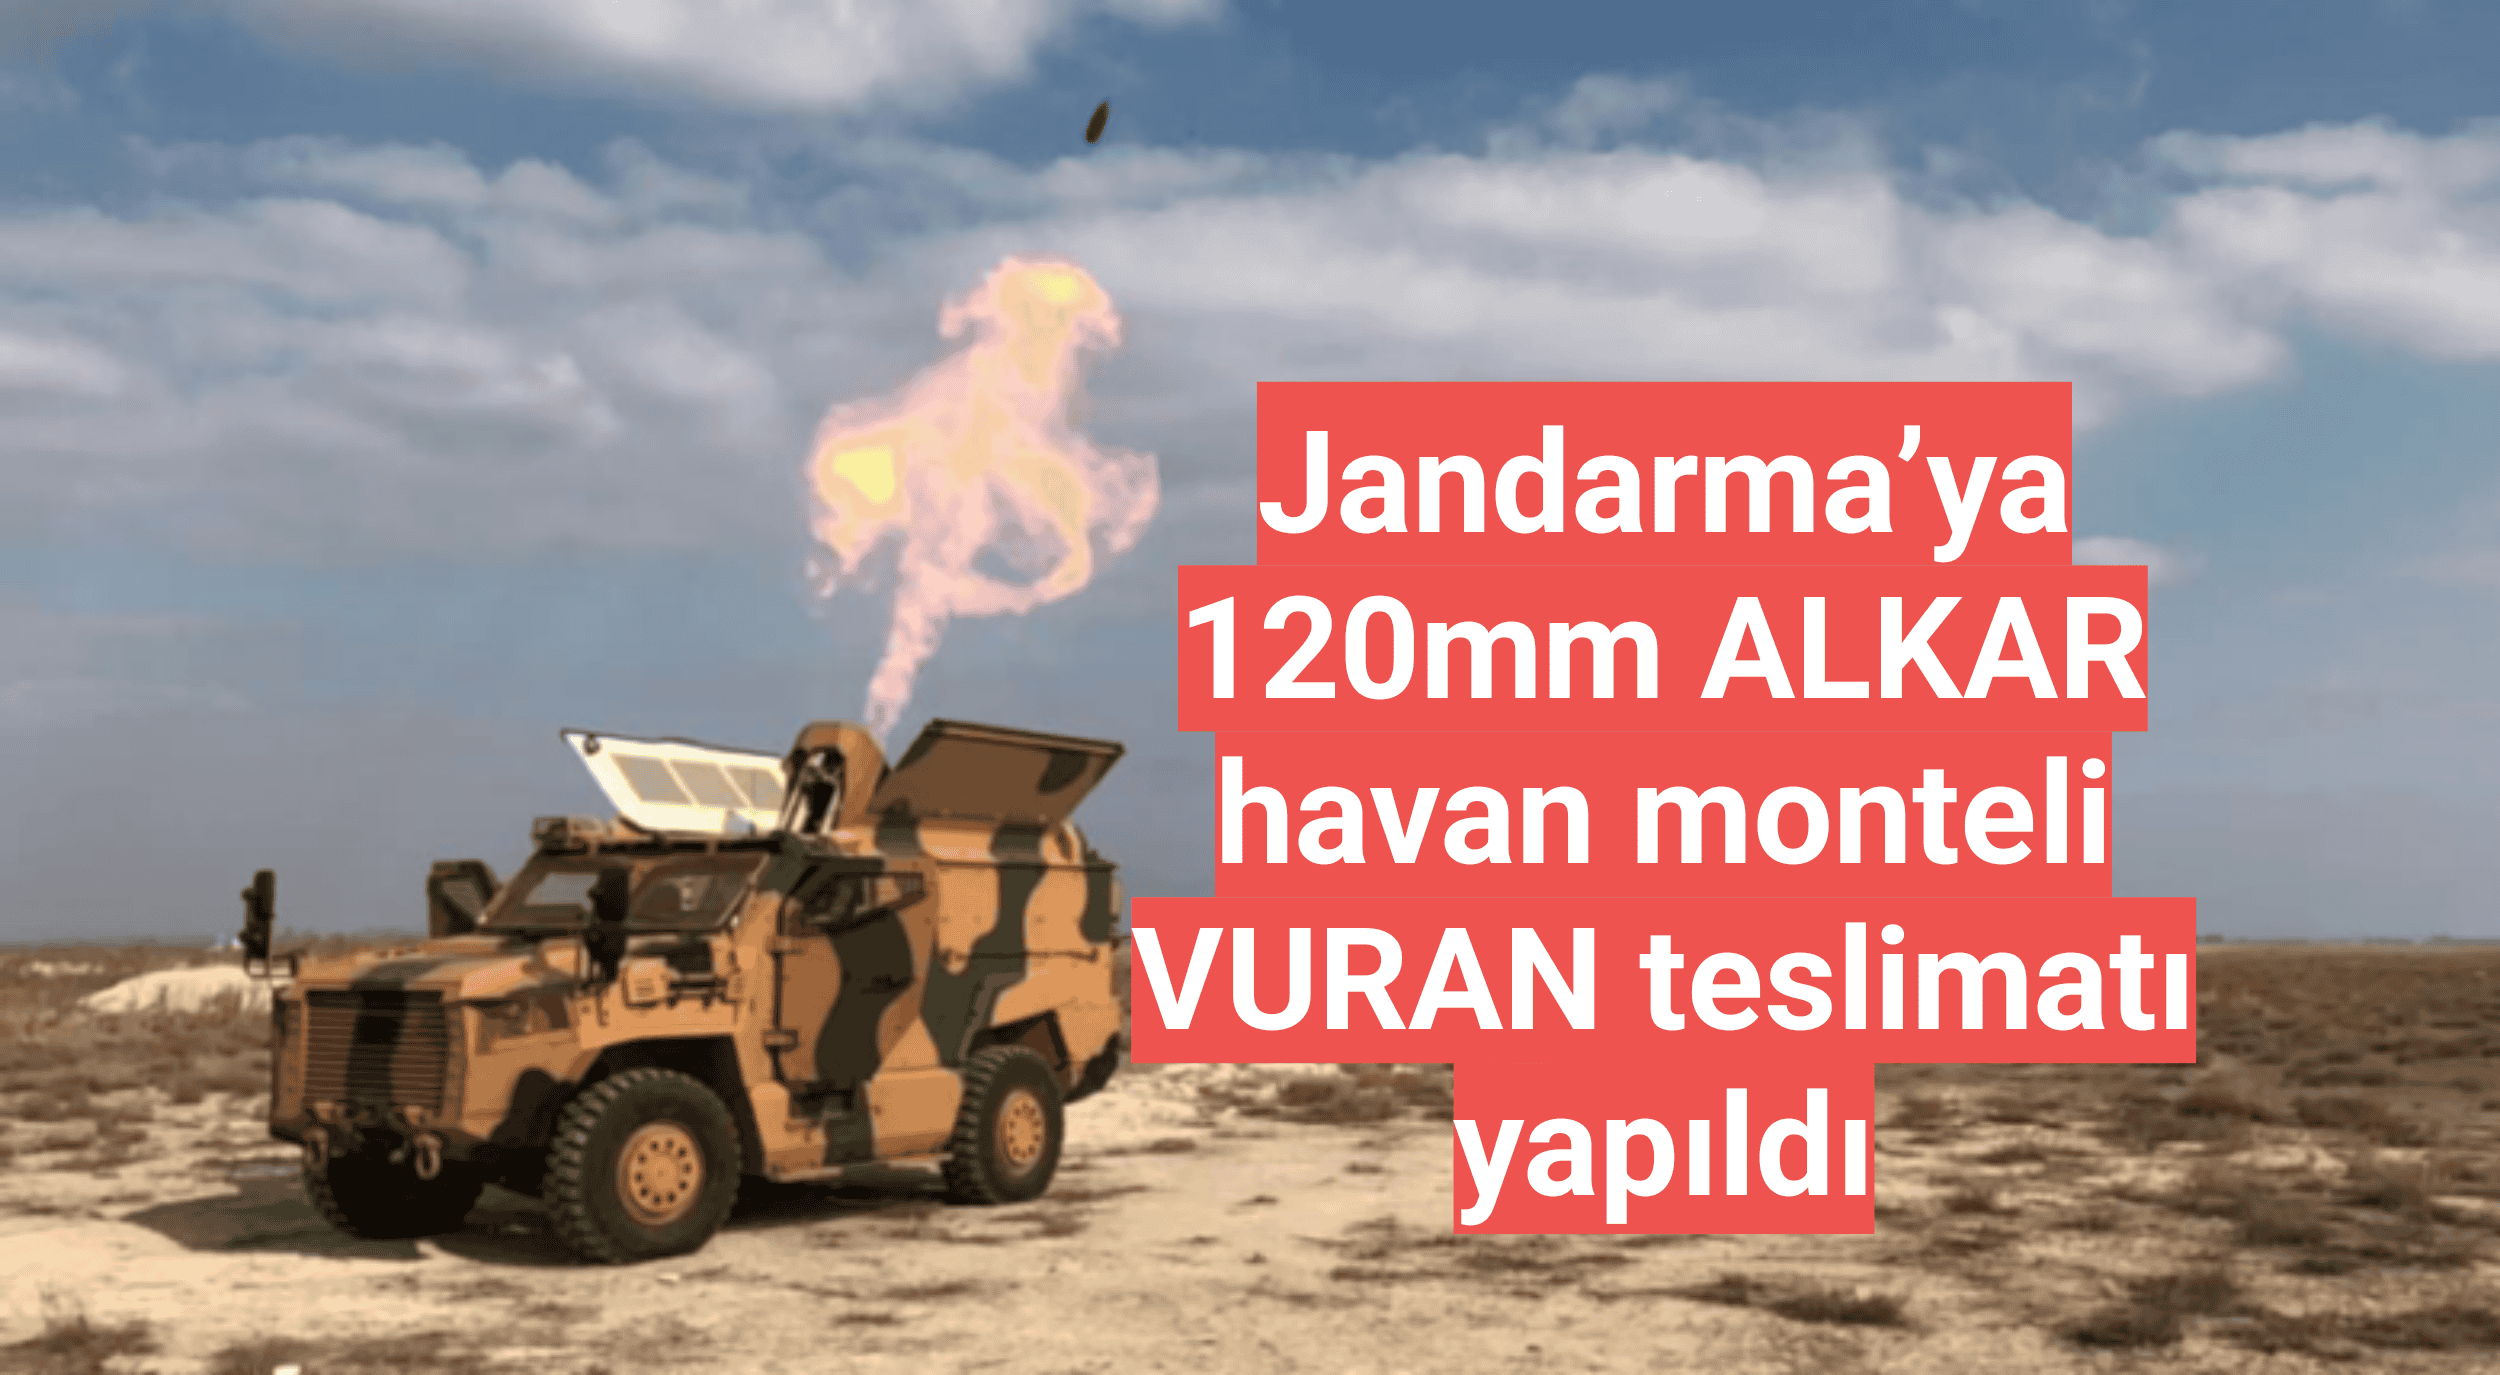 Jandarma’ya 120mm ALKAR havan monteli VURAN teslimatı yapıldı